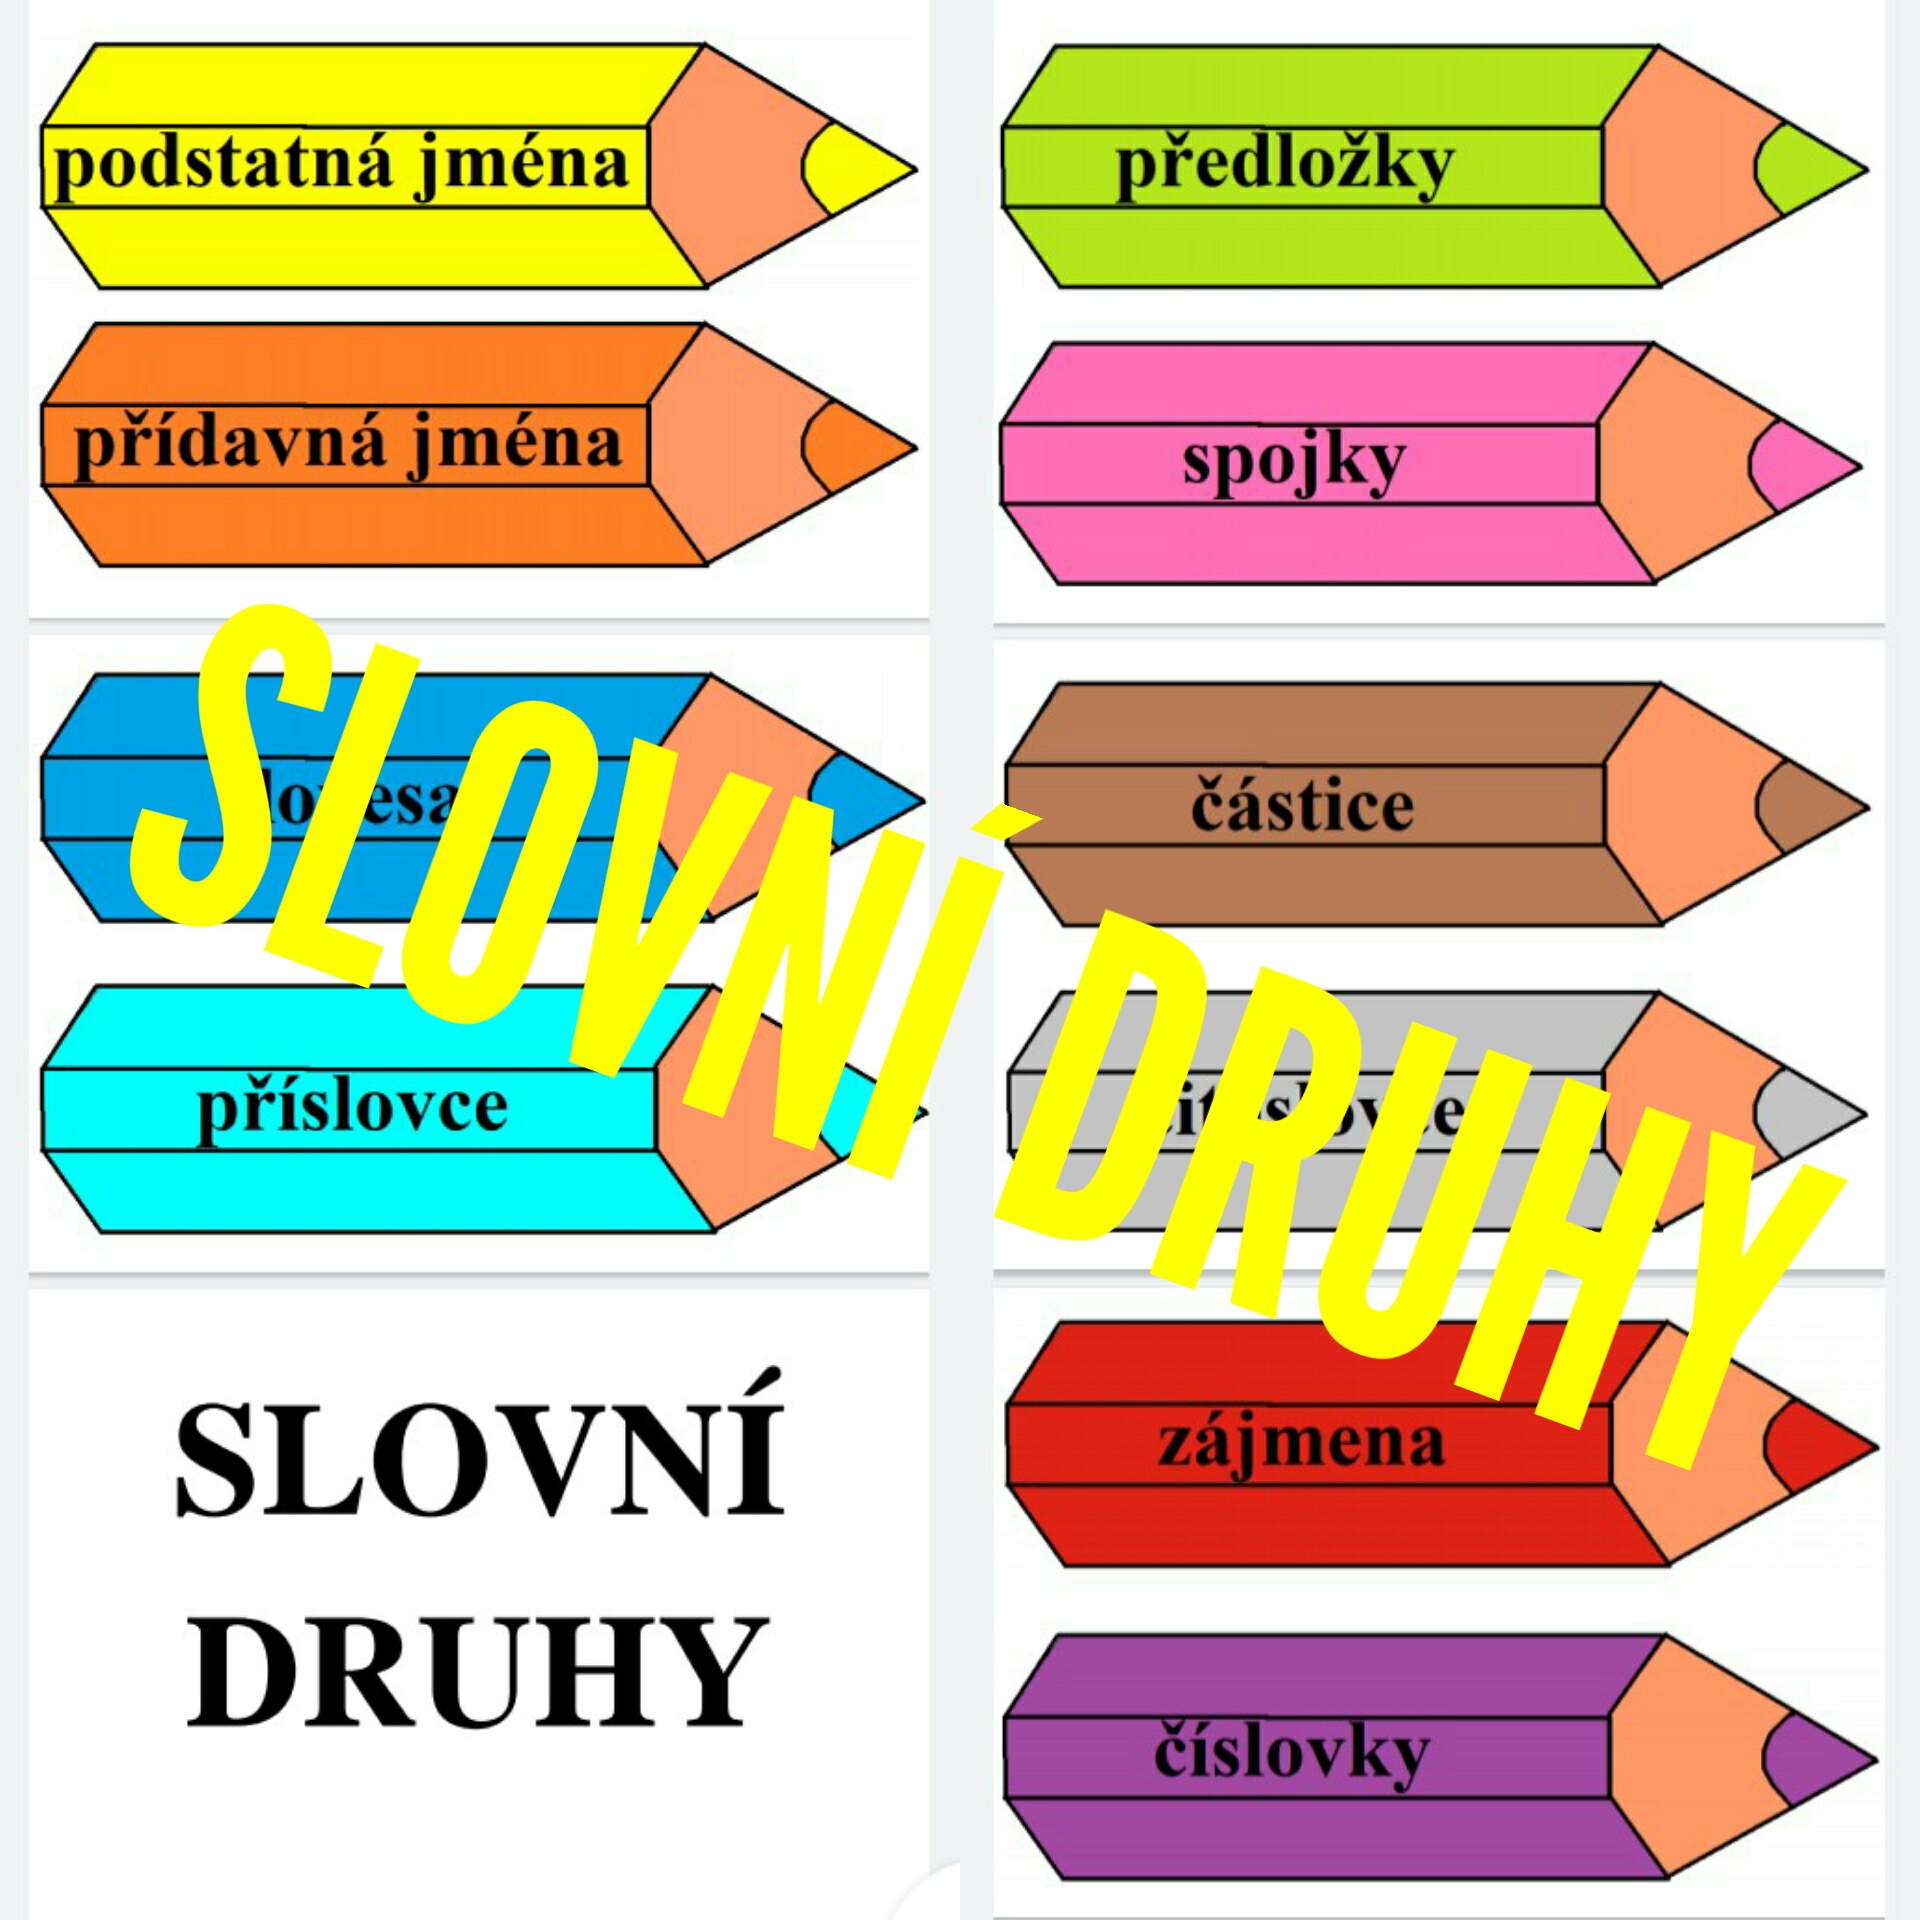 SLOVNÍ DRUHY - Český jazyk - UčiteléUčitelům.cz